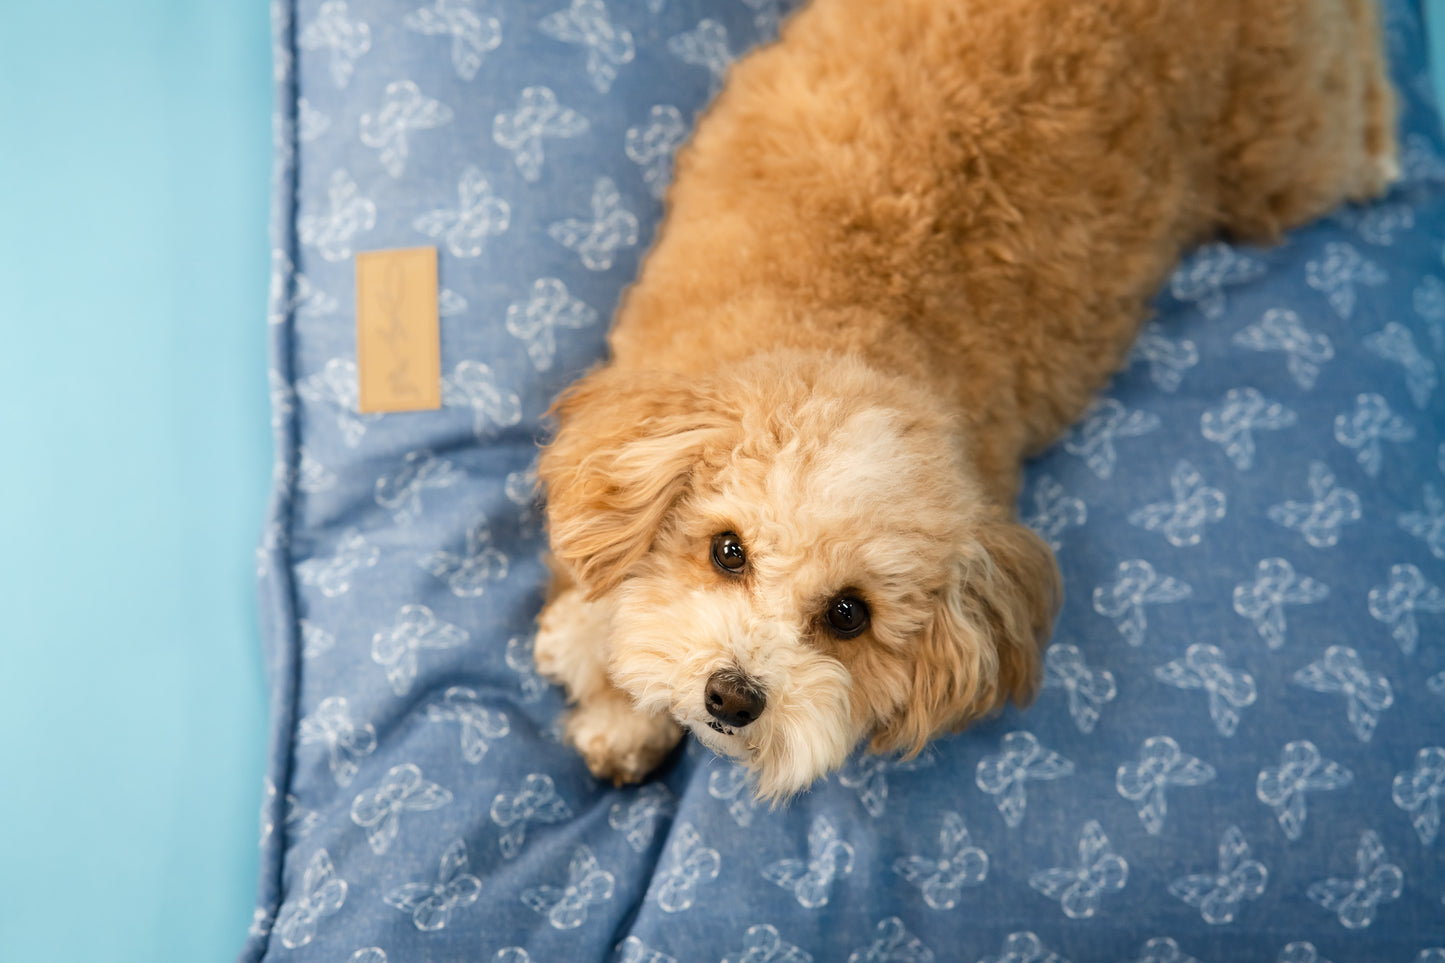 Rustic Denim Envelope Bed for Pets - Blue